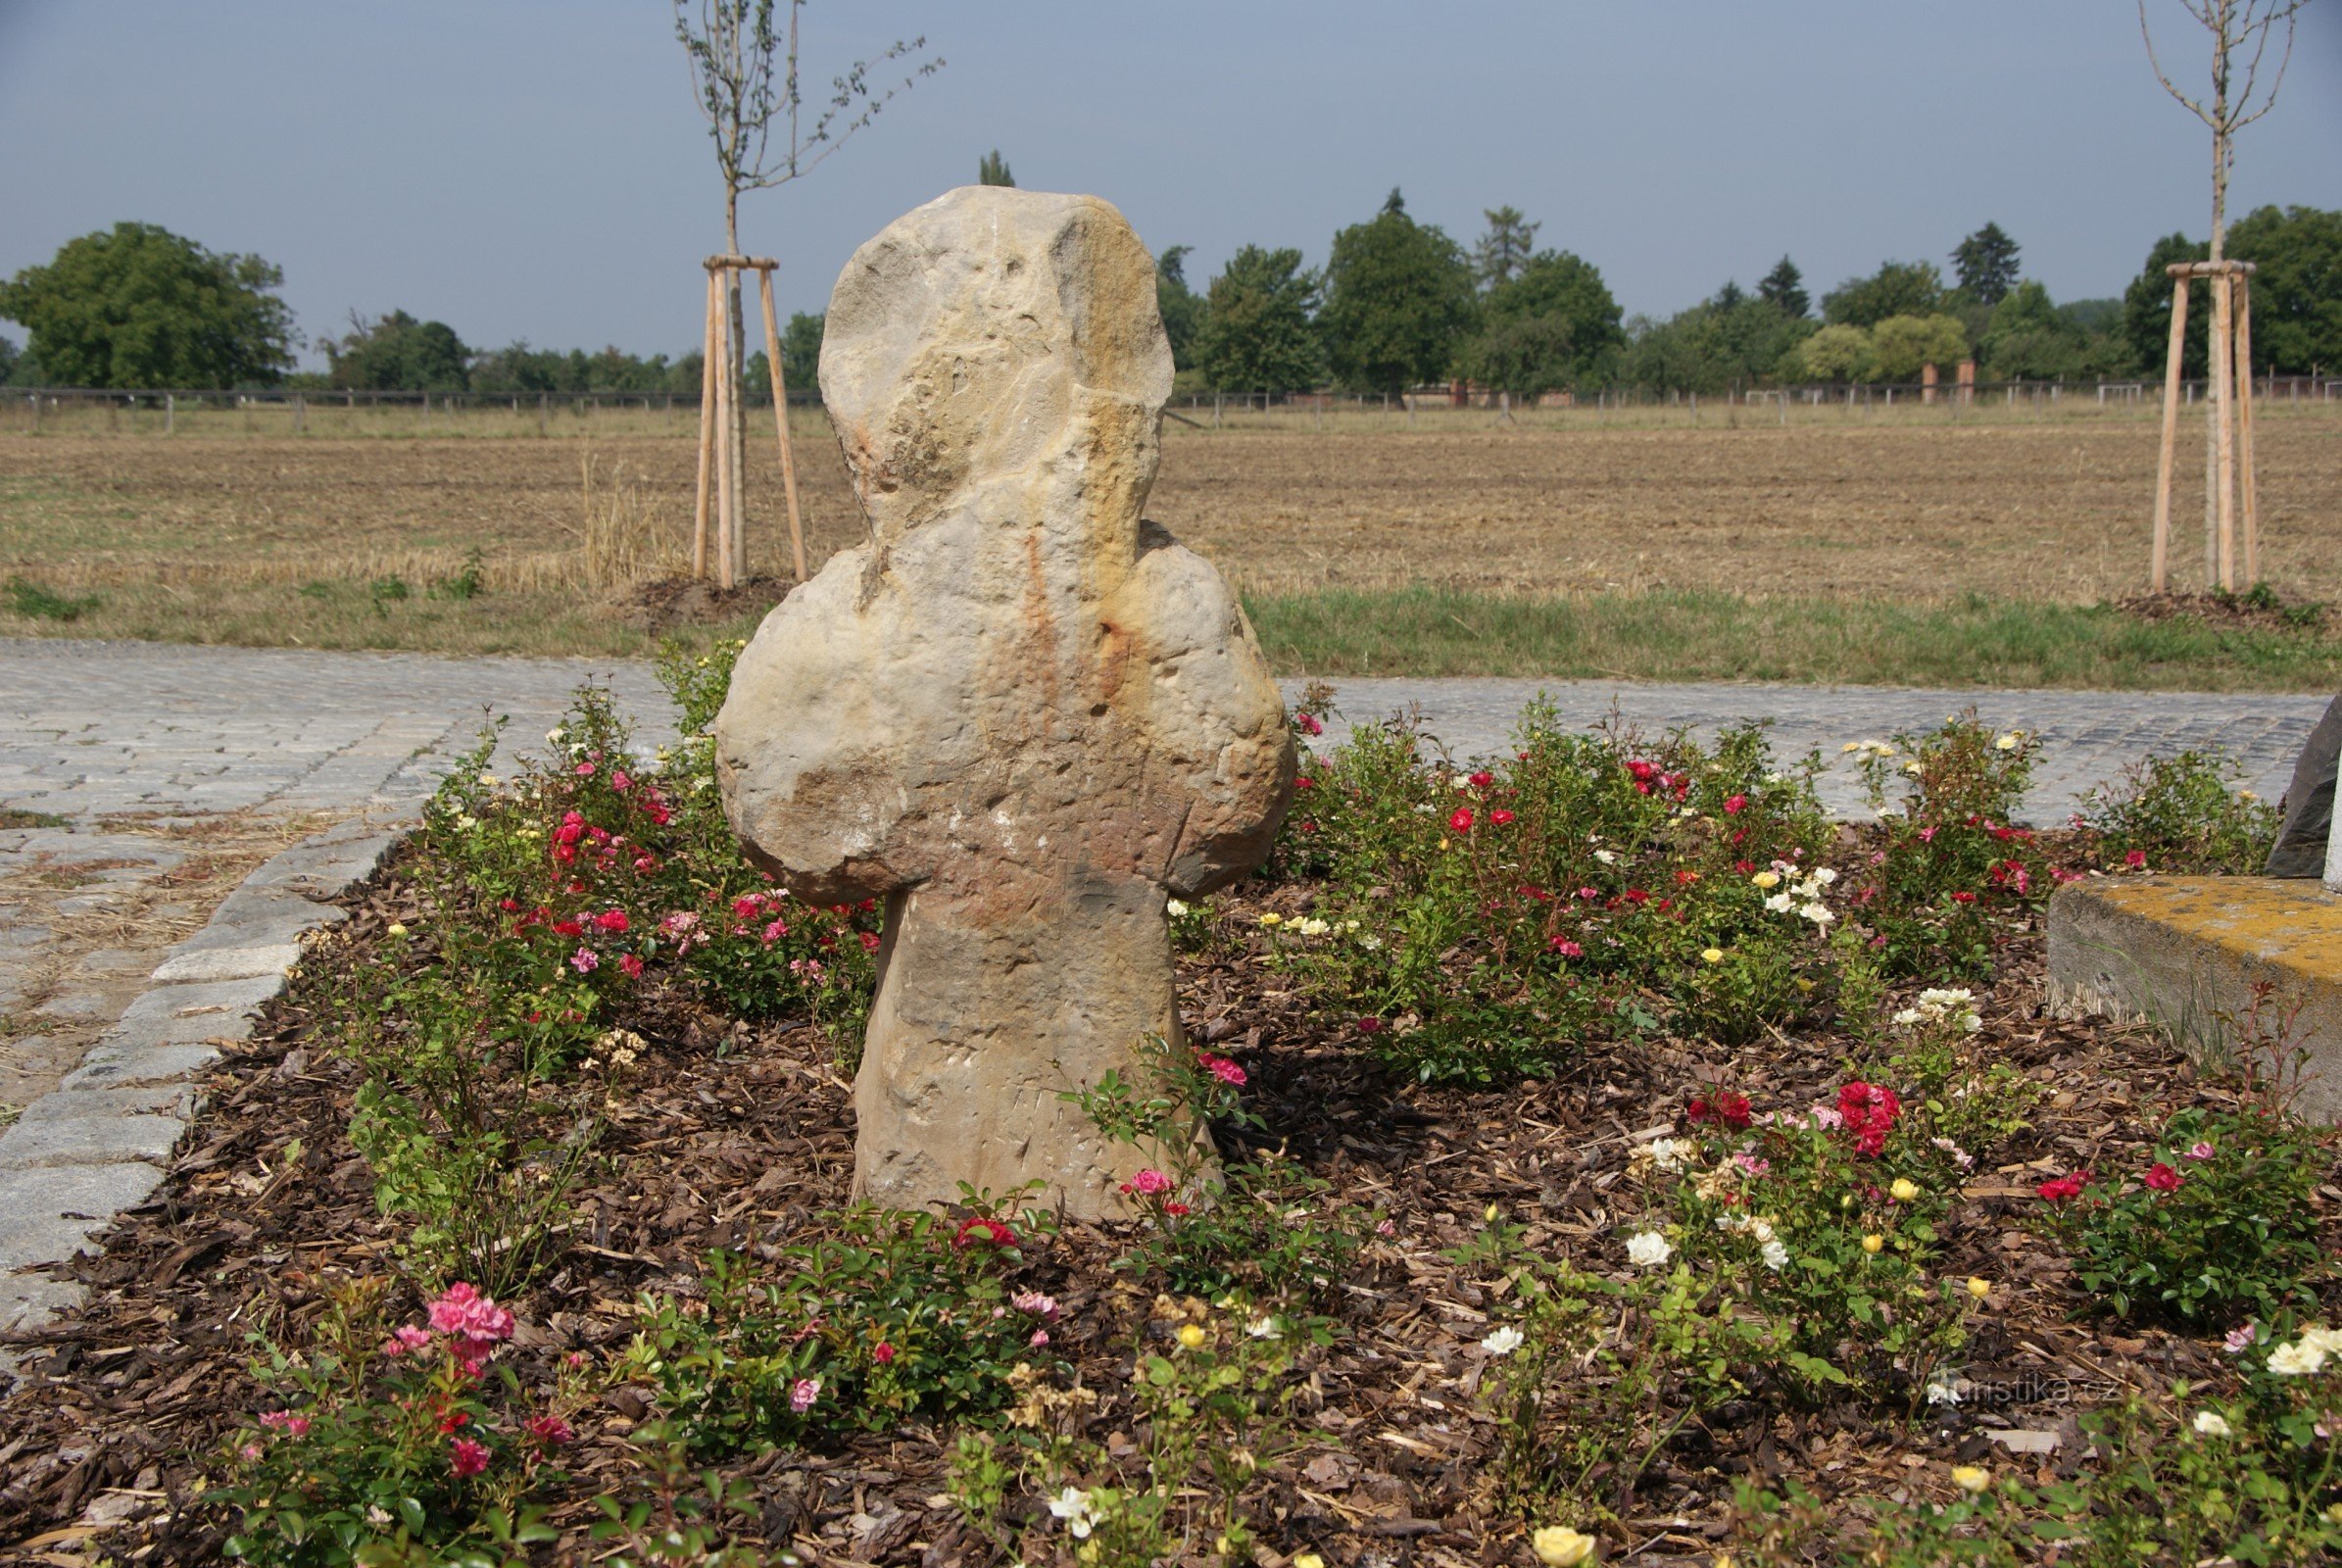 Ордени (біля Оломоуца) – «новий» мирний хрест у сільськогосподарських масштабах